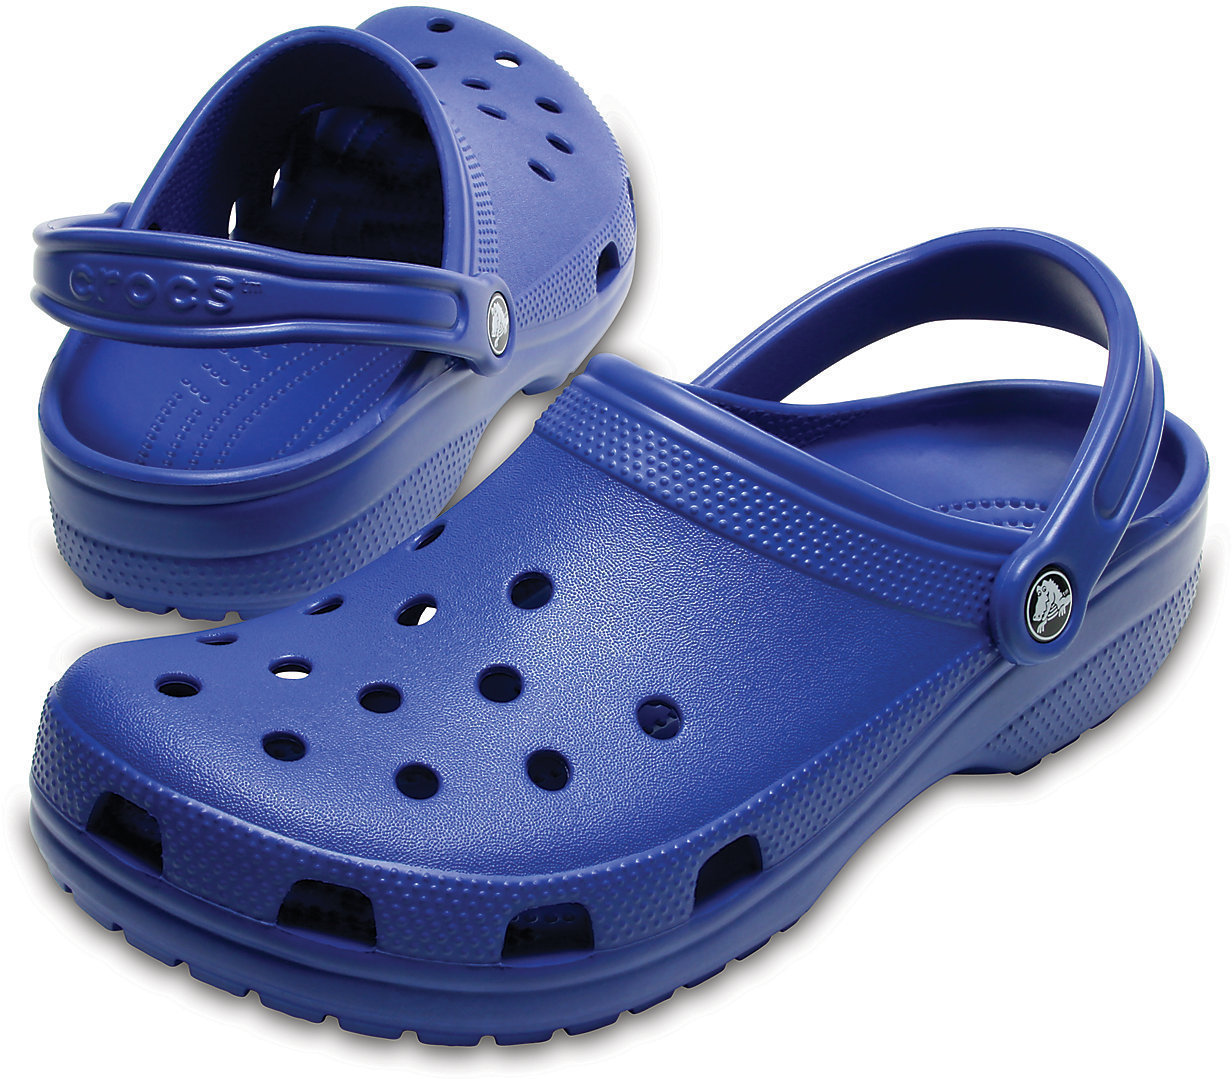 Παπούτσι Unisex Crocs Classic Clog Blue Jean 41-42